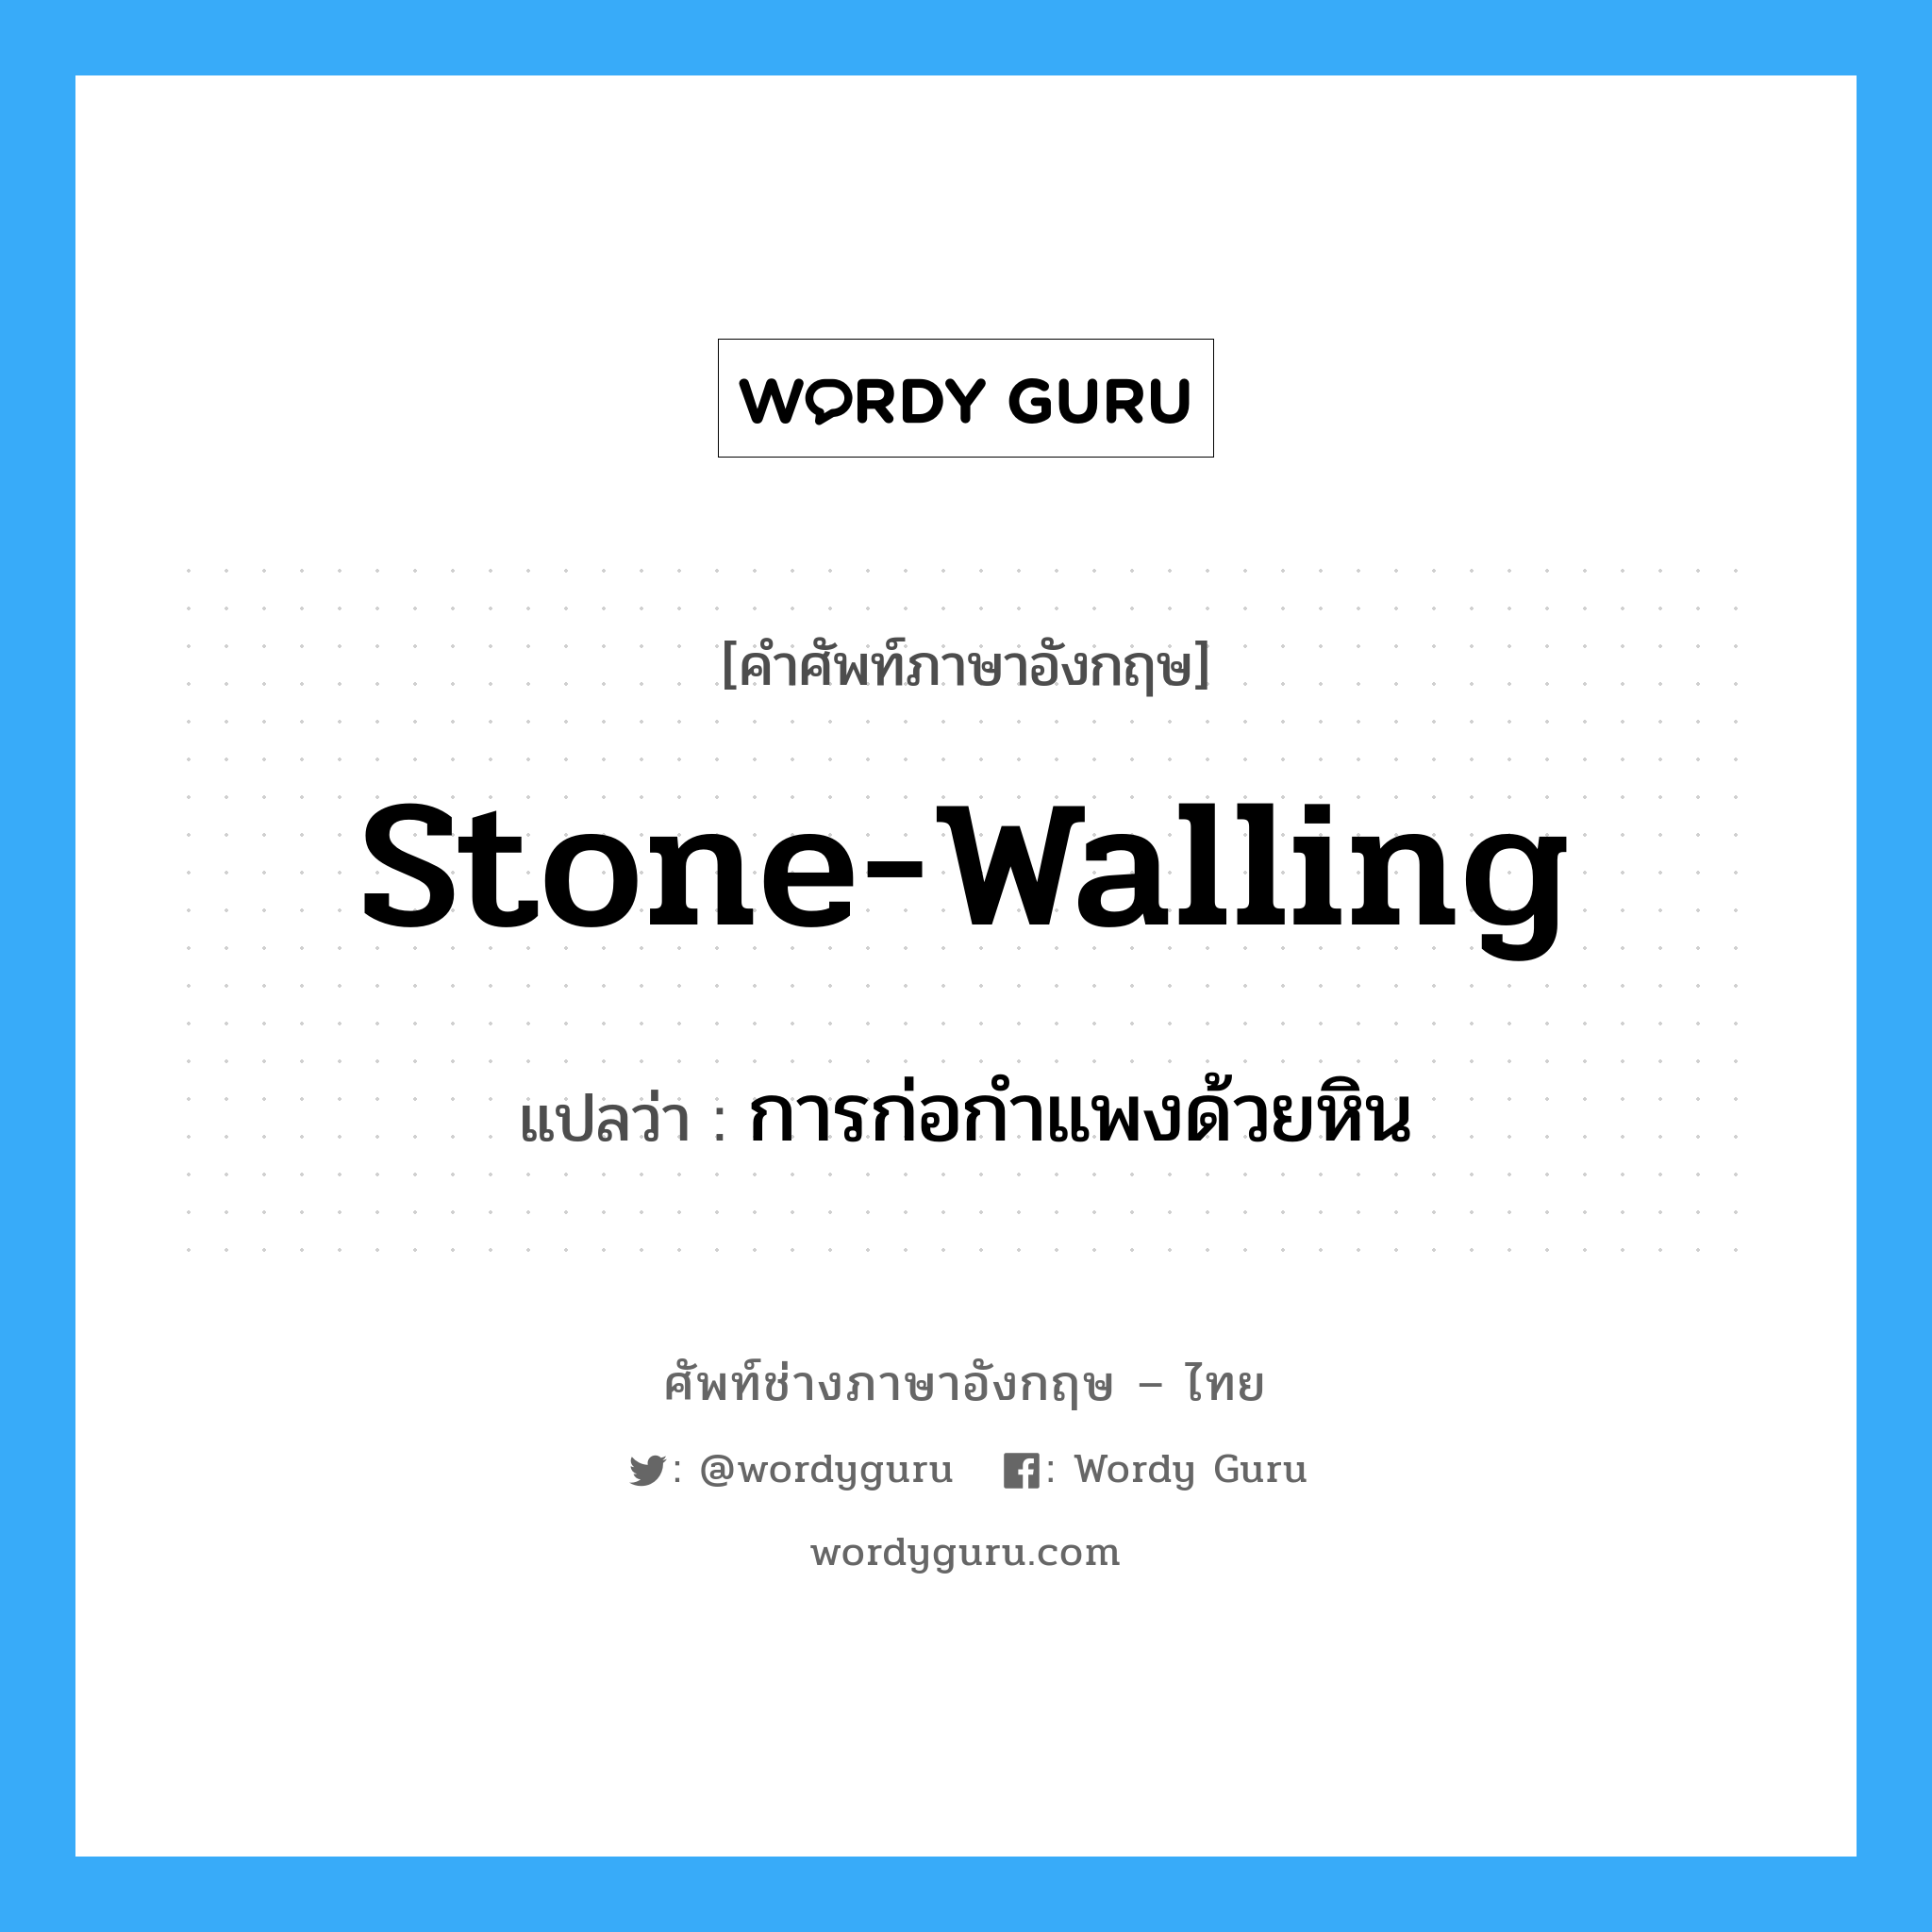 การก่อกำแพงด้วยหิน ภาษาอังกฤษ?, คำศัพท์ช่างภาษาอังกฤษ - ไทย การก่อกำแพงด้วยหิน คำศัพท์ภาษาอังกฤษ การก่อกำแพงด้วยหิน แปลว่า stone-walling